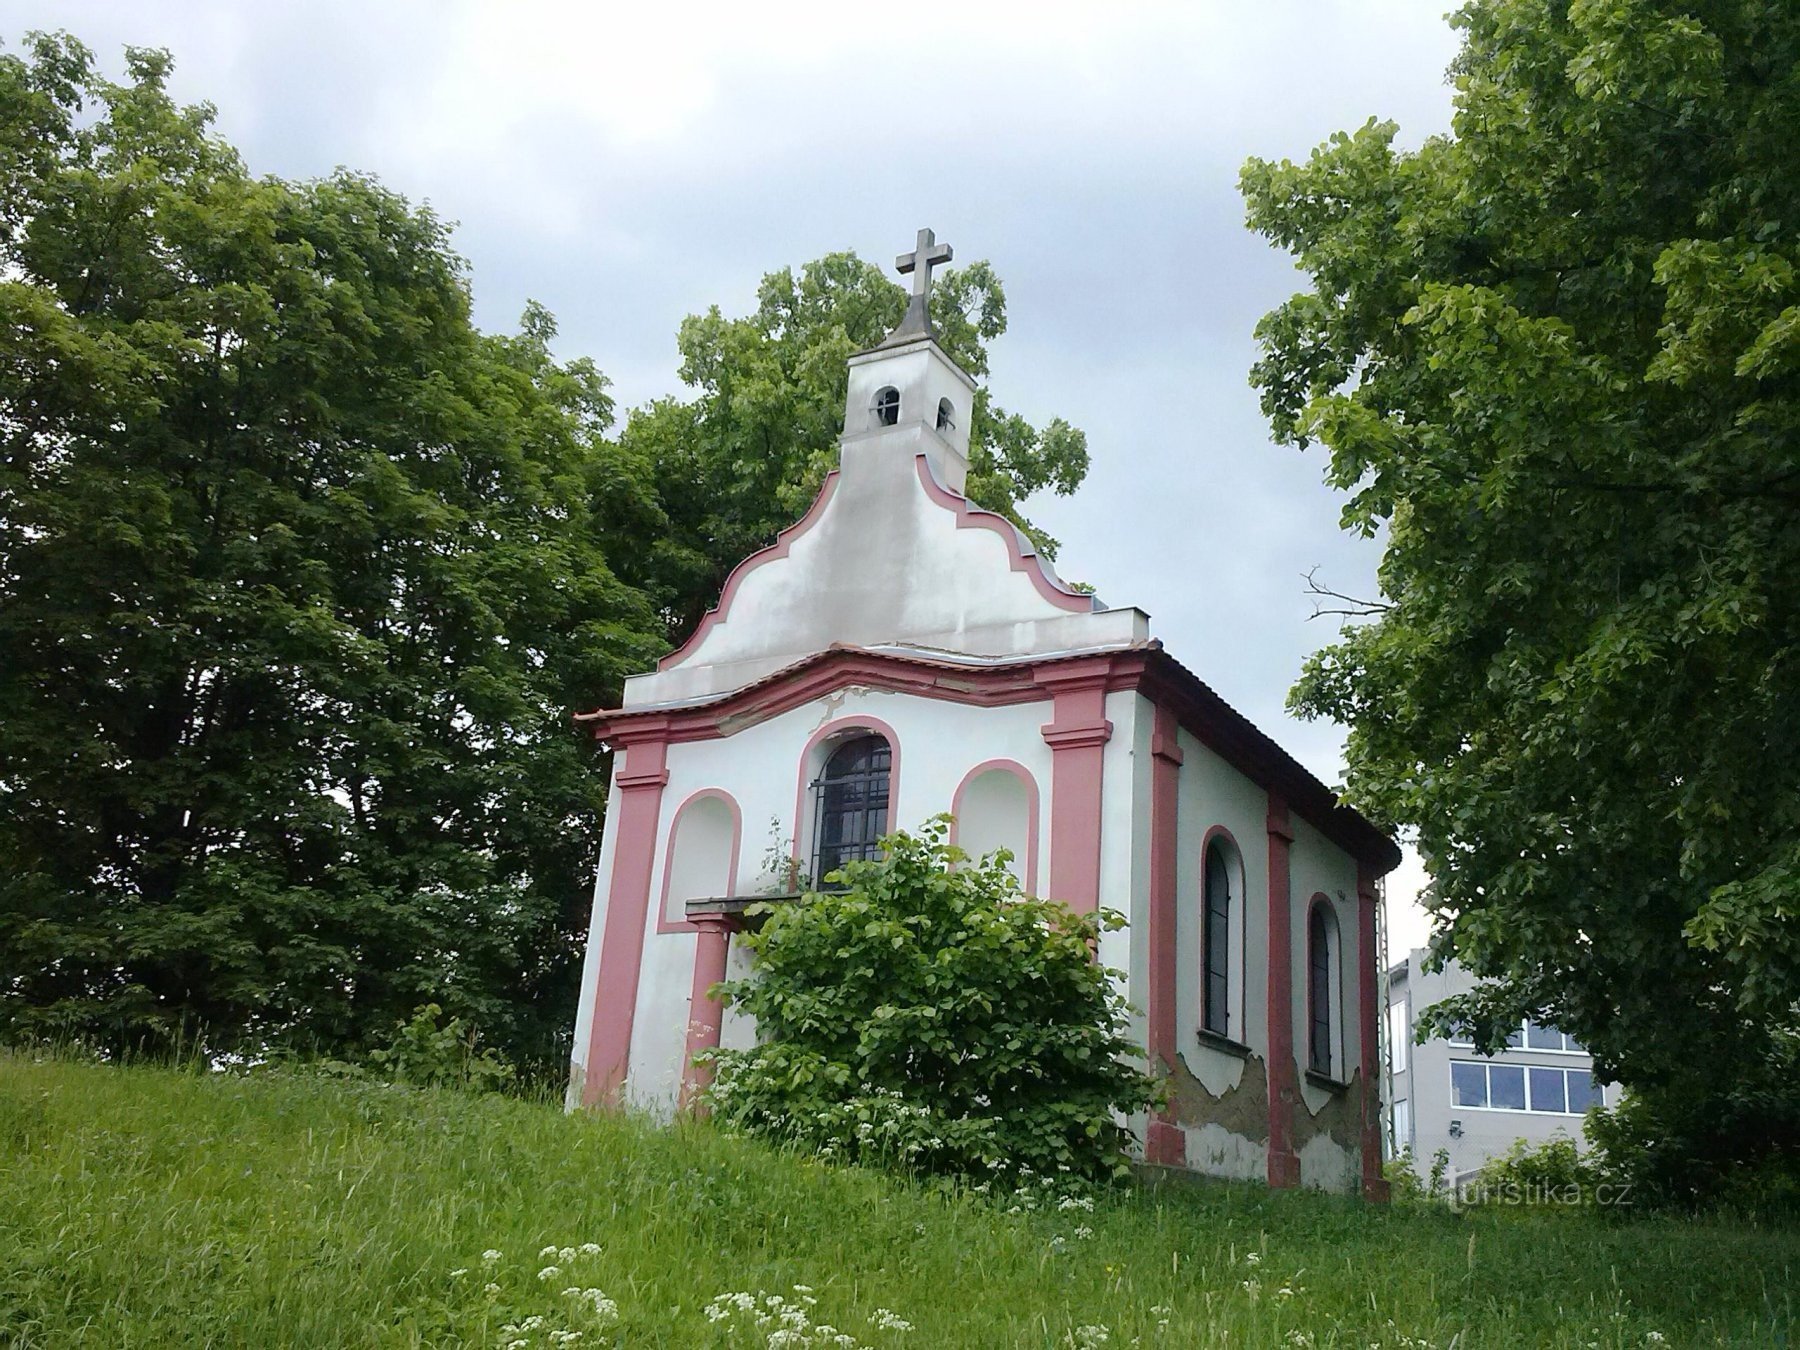 2. Église de St. Jean-Baptiste sur John Hill